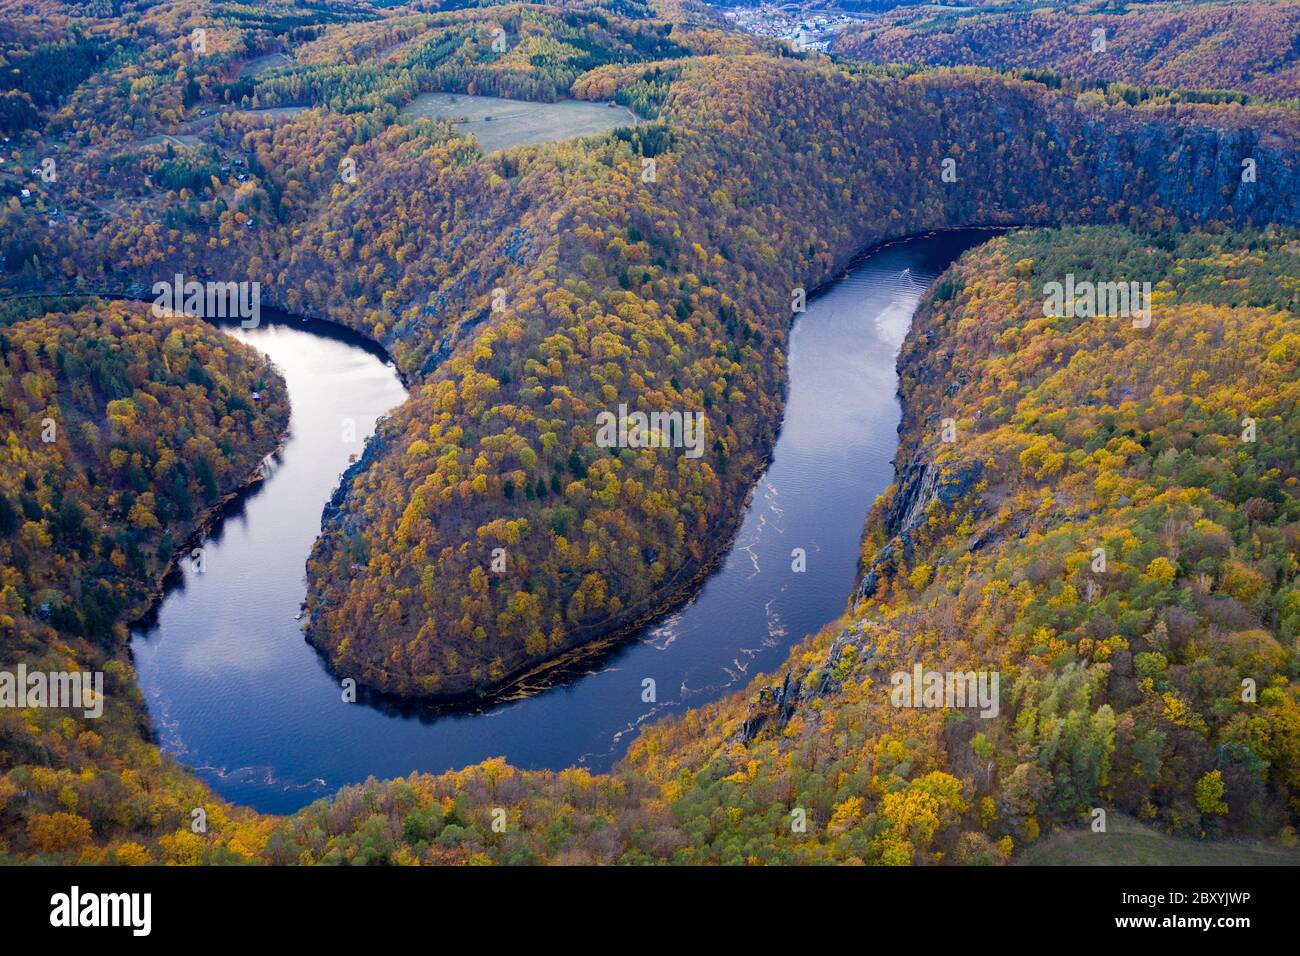 Schöne Vyhlidka Maj, Lookout Maj, in der Nähe von Teletin, Tschechische Republik. Die Mäander des Flusses Moldau von bunten Herbst Wald umgeben Gesehen von oben. Stockfoto